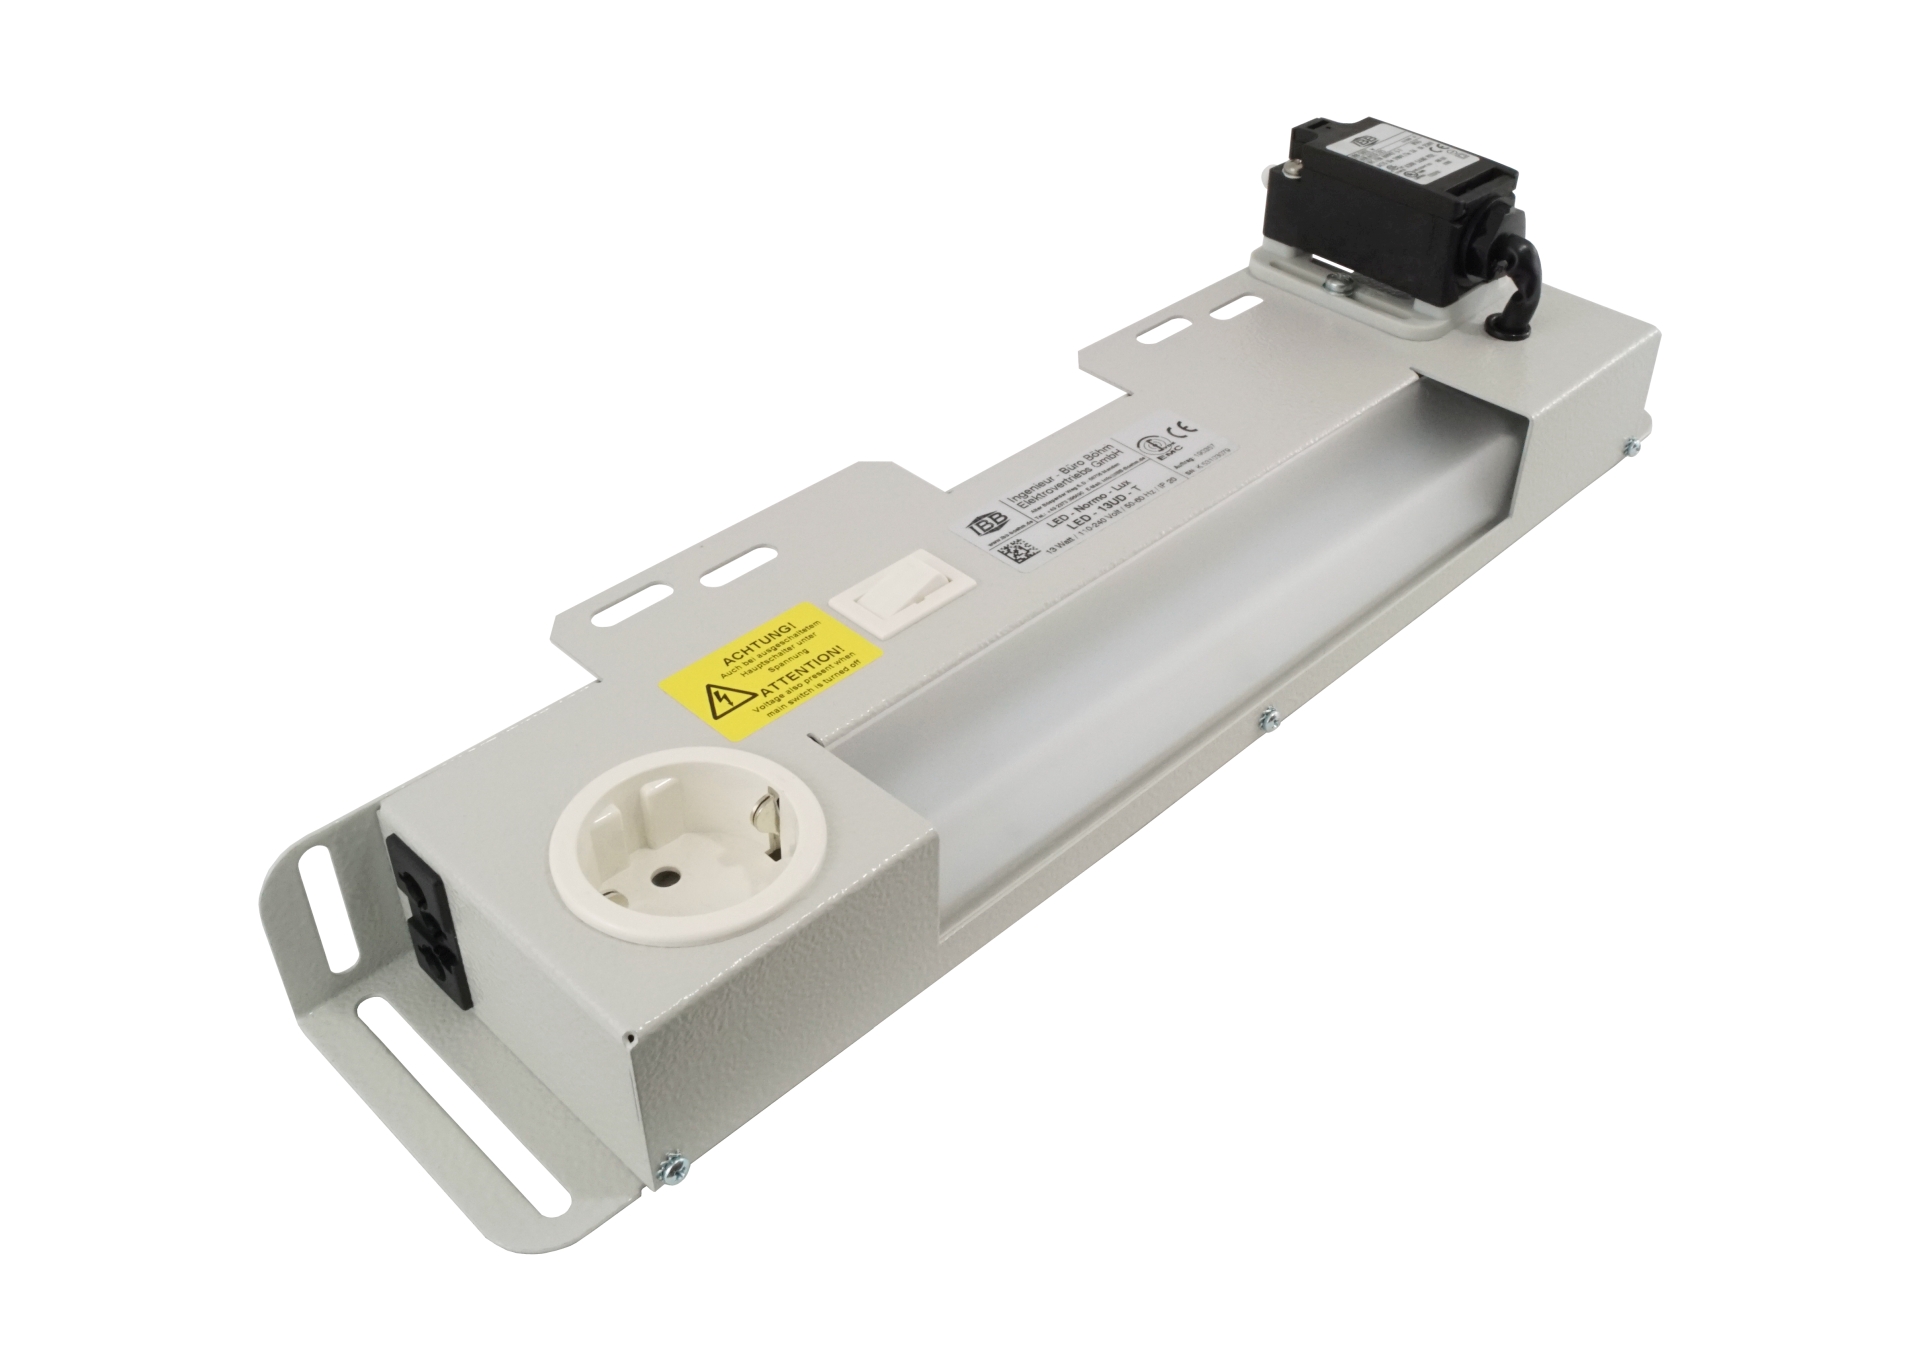 Abbildung LED Schaltschrankleuchte LED-Normo-Lux 13 Watt | Betriebsspannung: 110-240 Volt, 50-60 Hz, aufgebauter Schalter